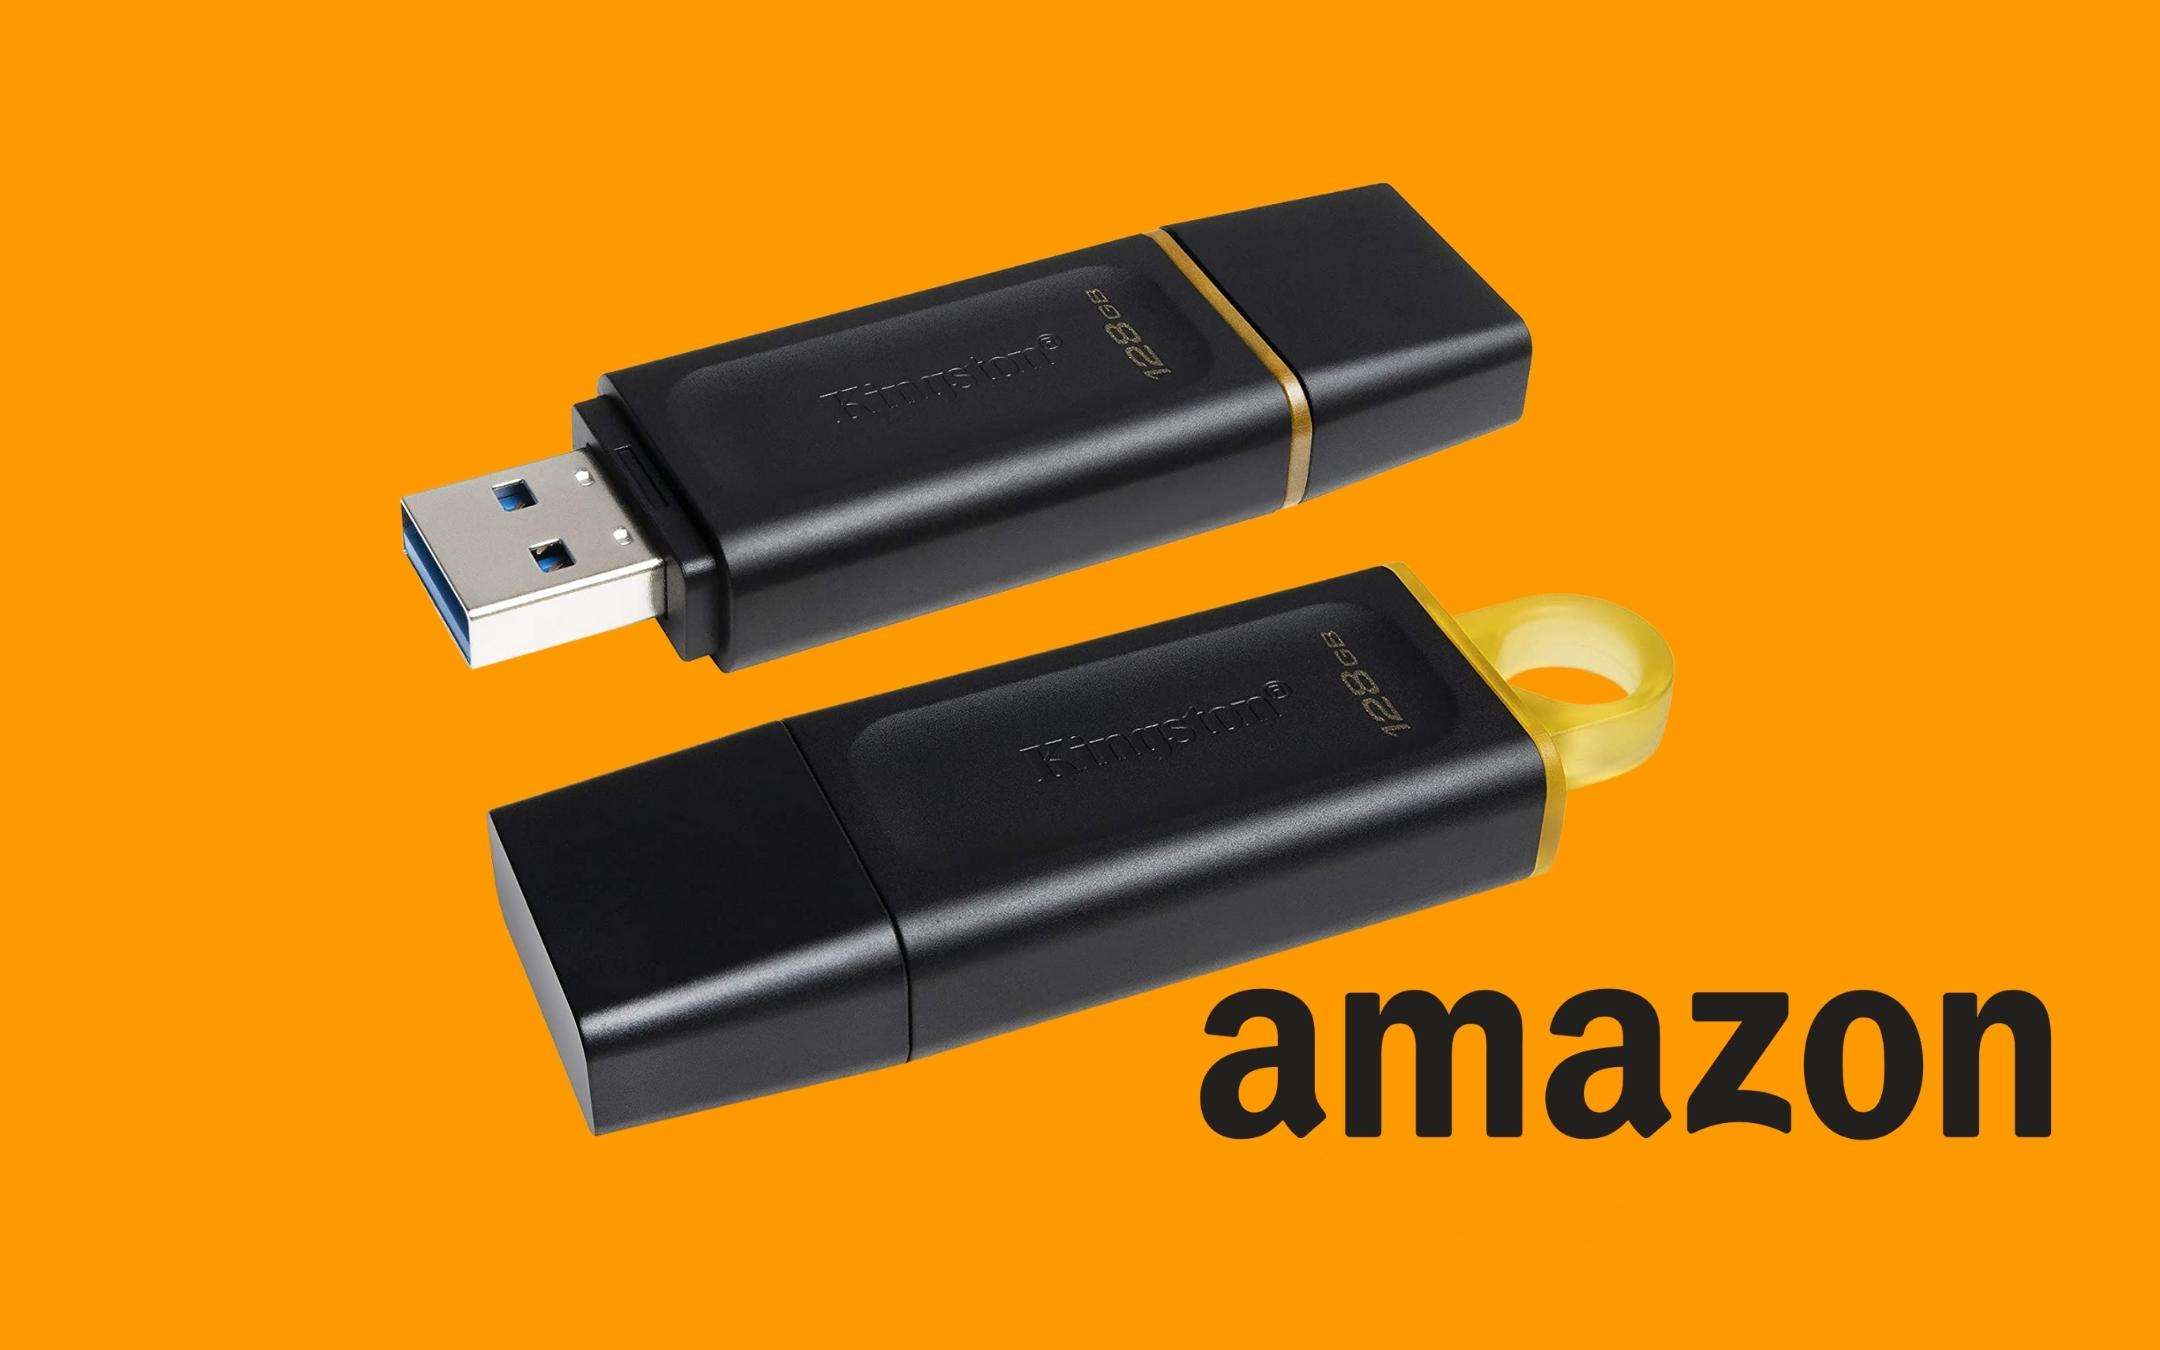 Chiavetta USB Kingston da 128GB a un prezzo RIDICOLO su